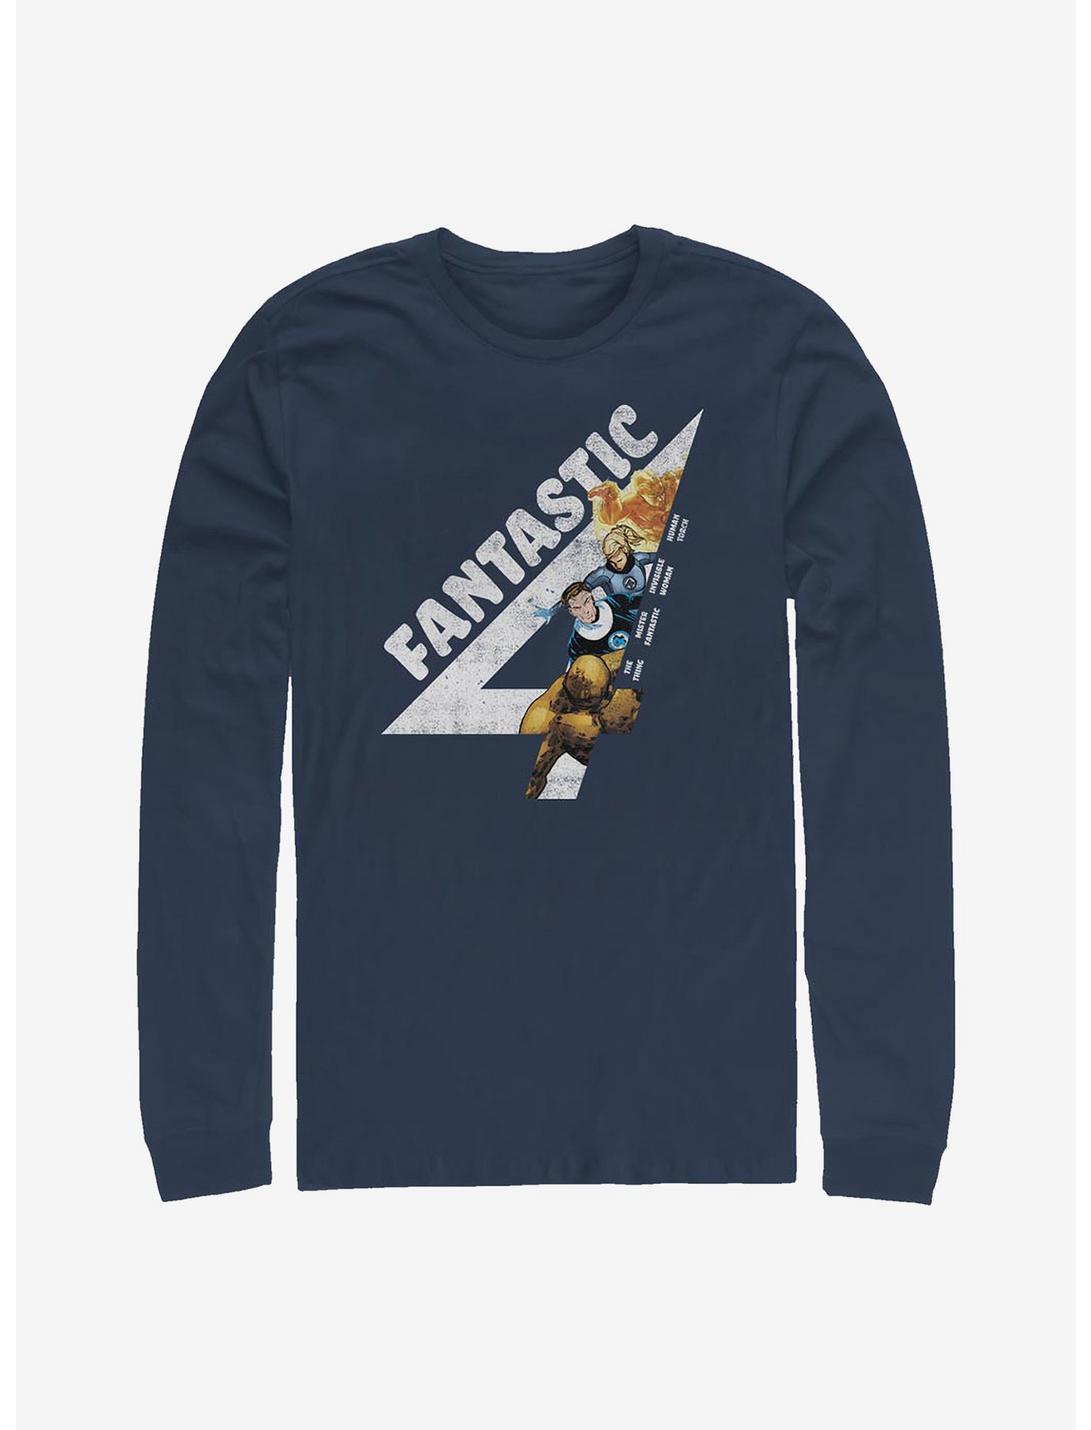 Marvel Fantastic Four Fantastically Vintage Long-Sleeve T-Shirt, NAVY, hi-res